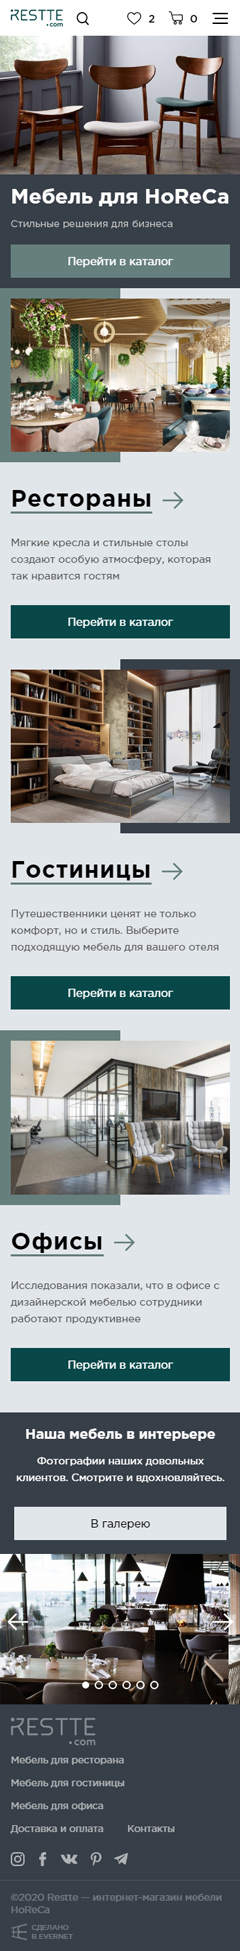 Дизайн мобильная версия сайта Restte — магазин дизайнерской мебели для HoReCa